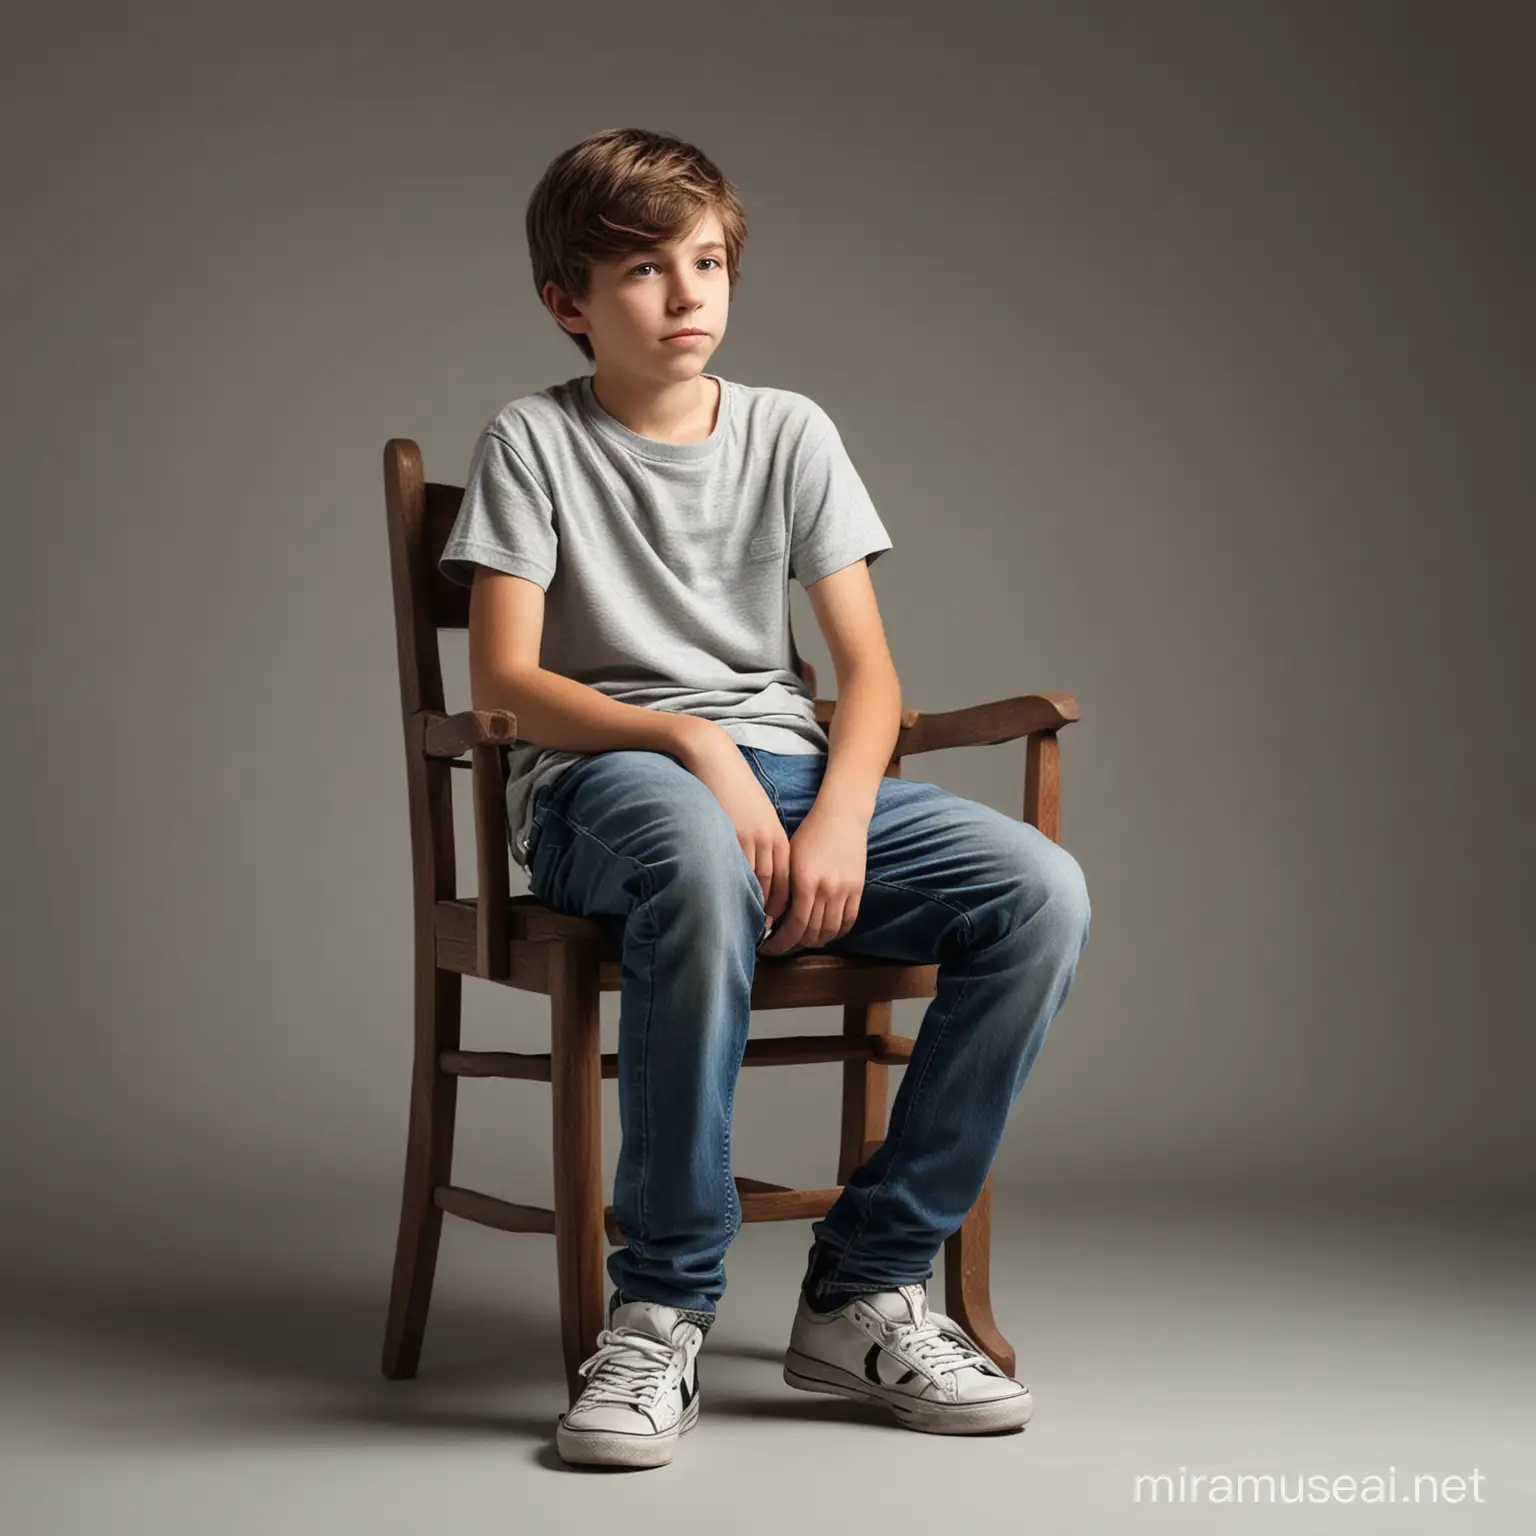 Teenage Boy Sitting Sideways on a Chair